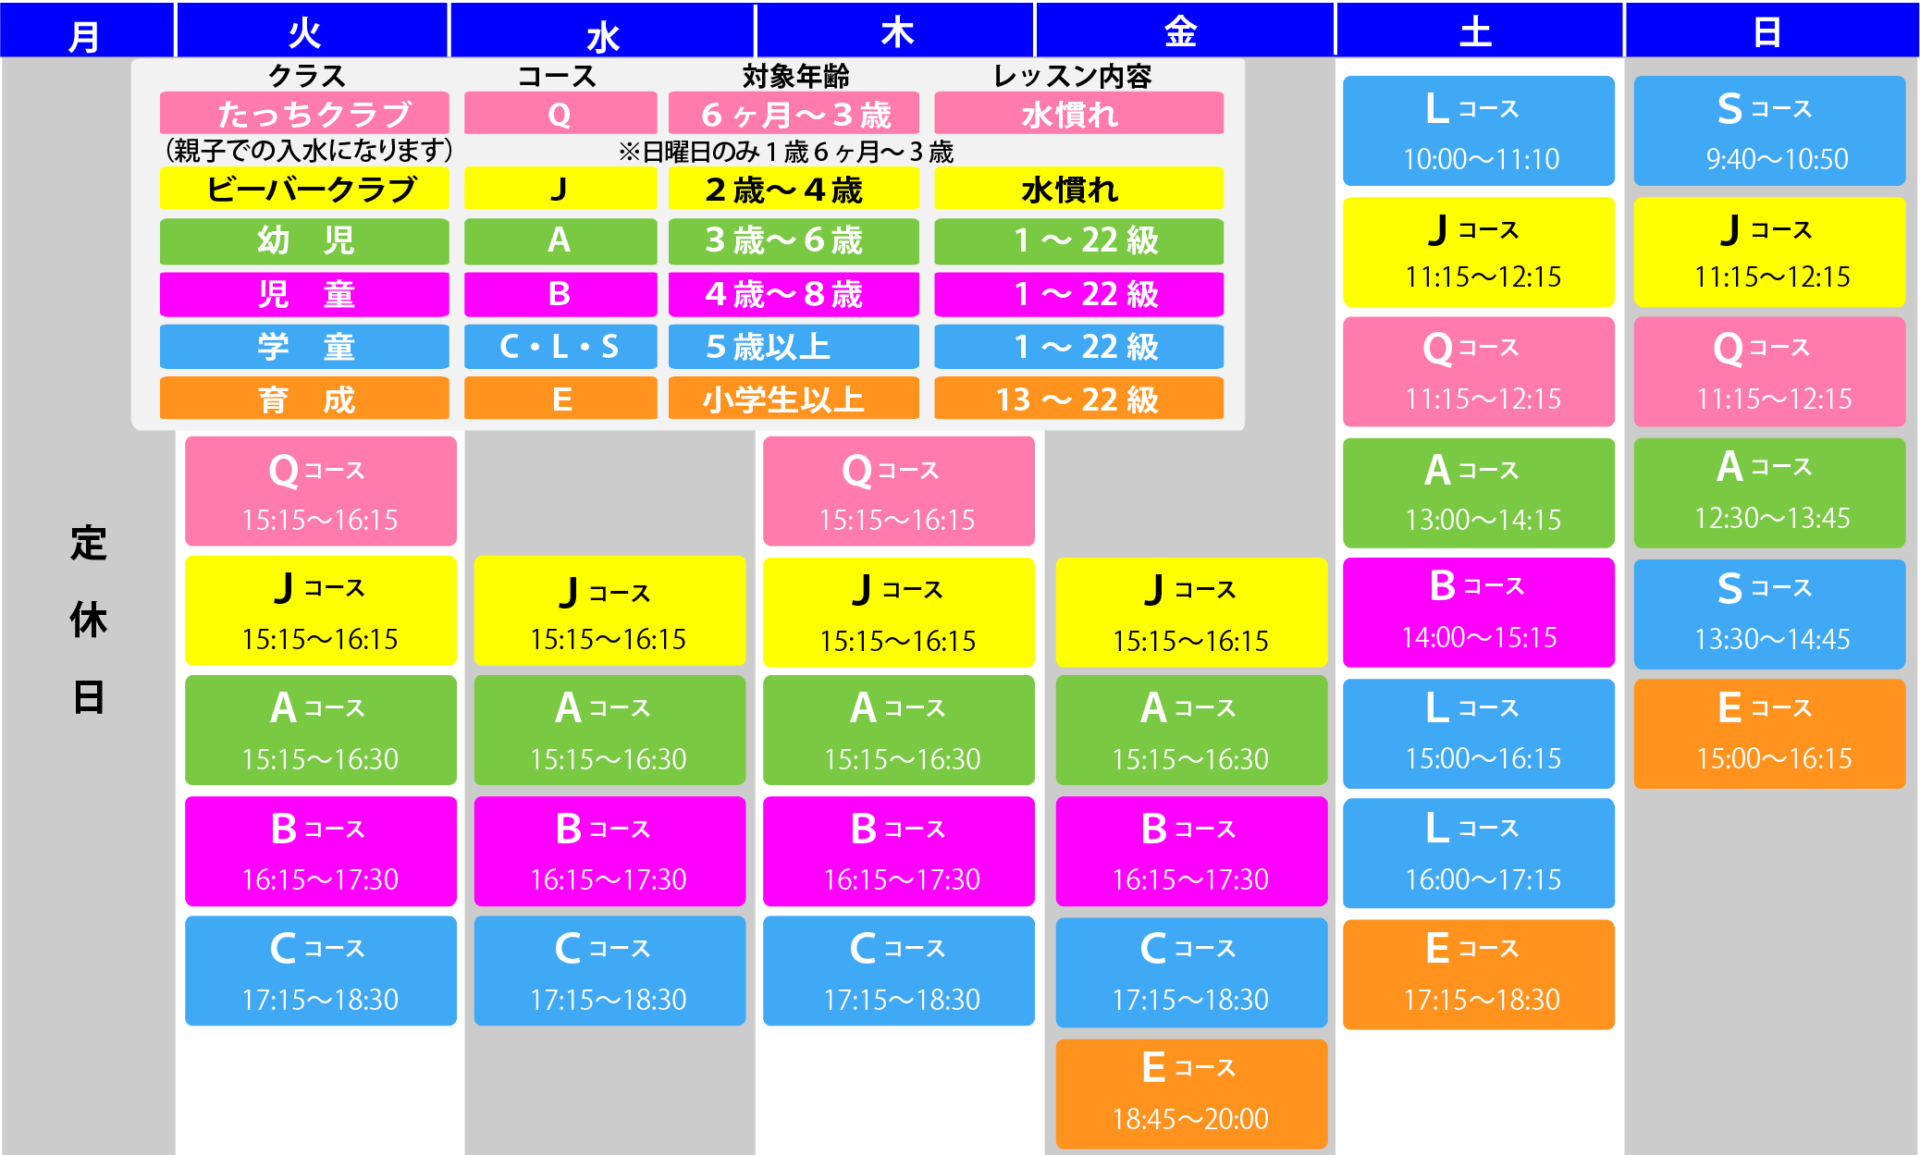 スポーツプラザ山新鉾田ジュニアスイミングスケジュール表